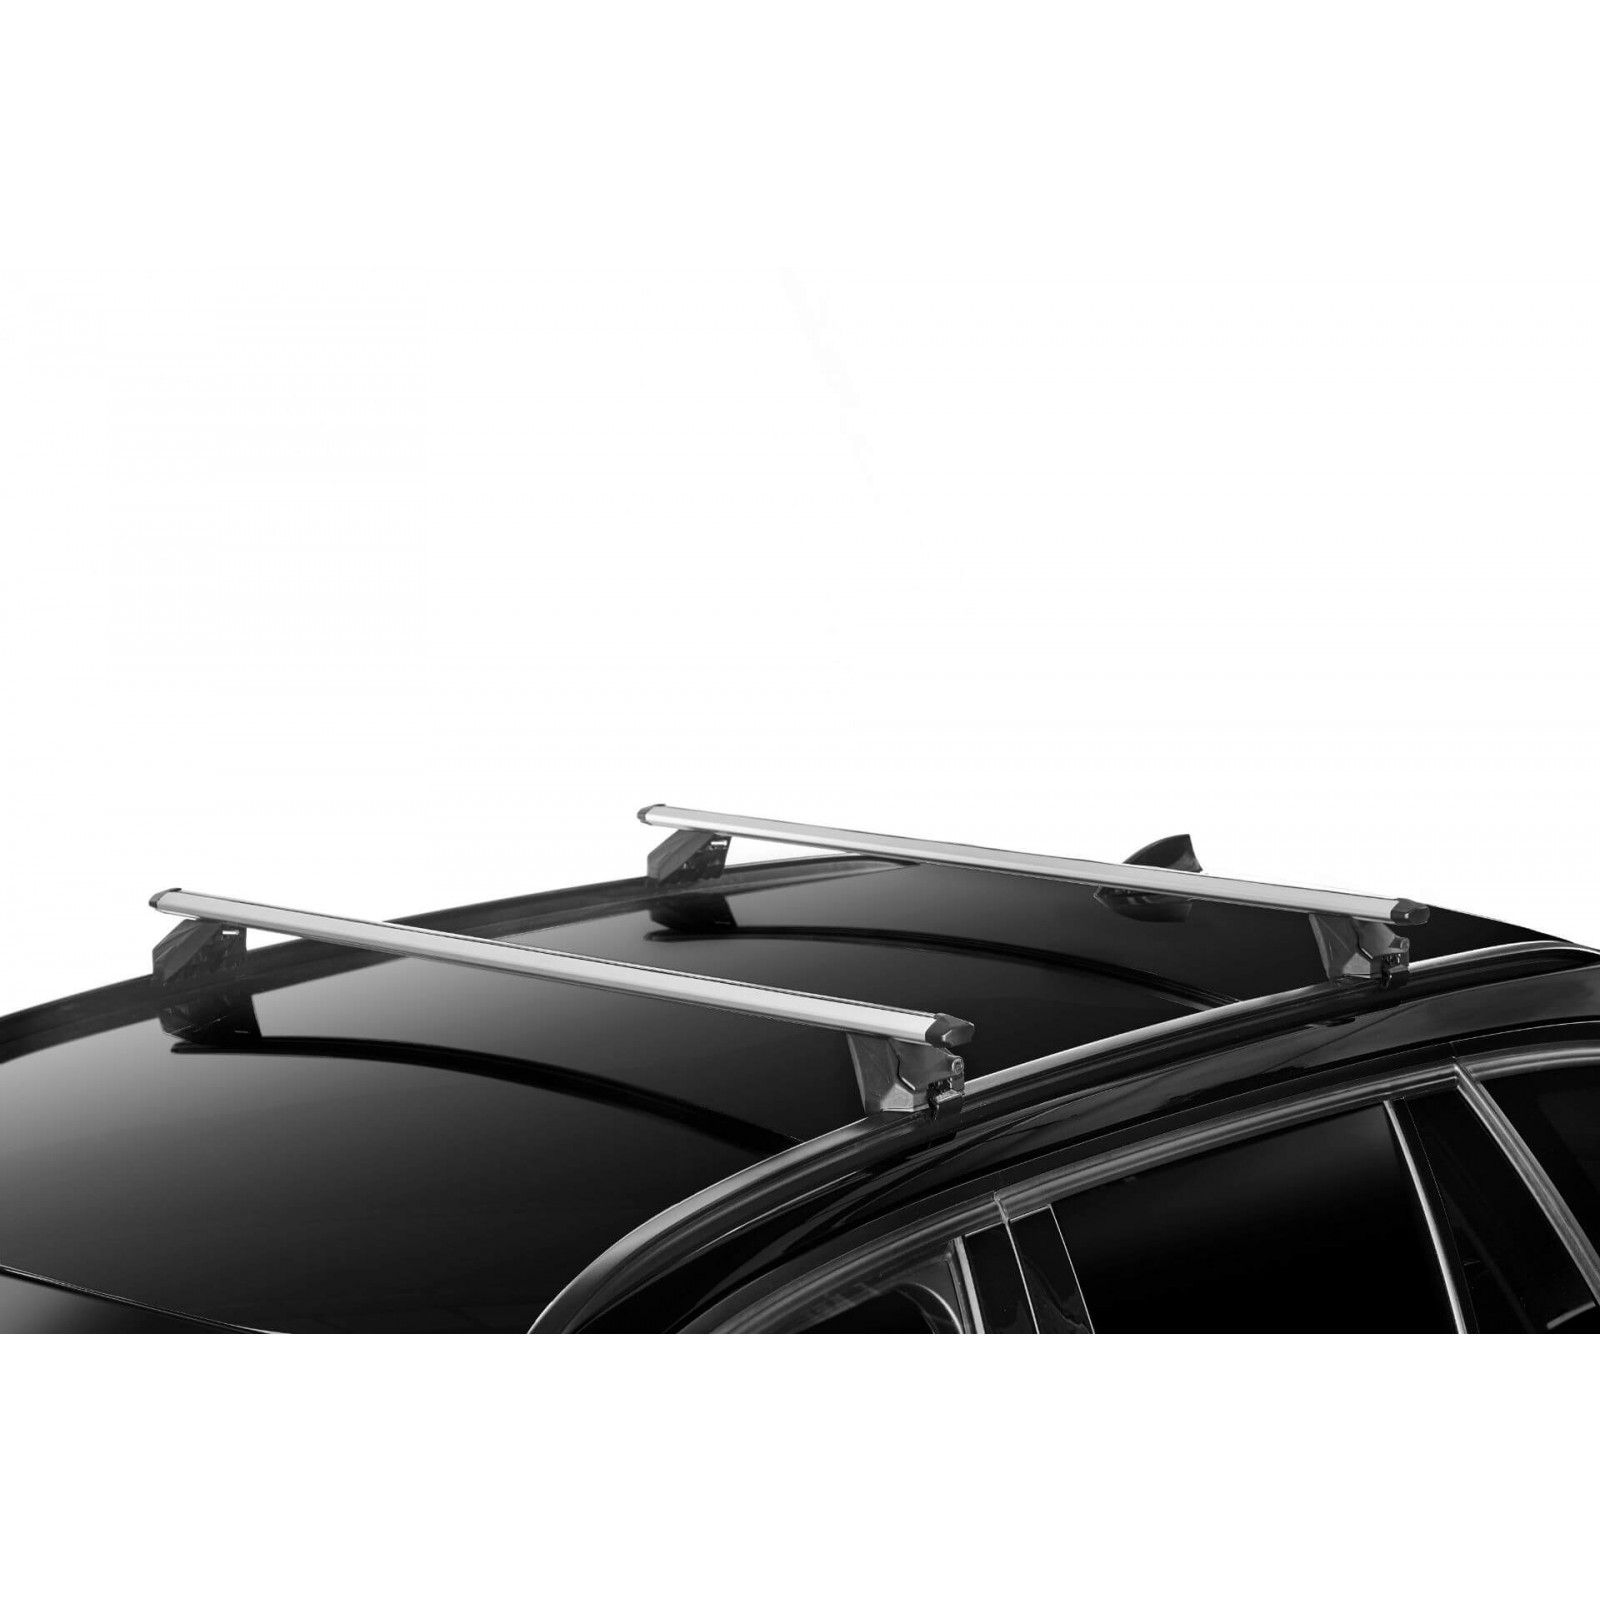 Barres de toit pour BMW X1 (E84)